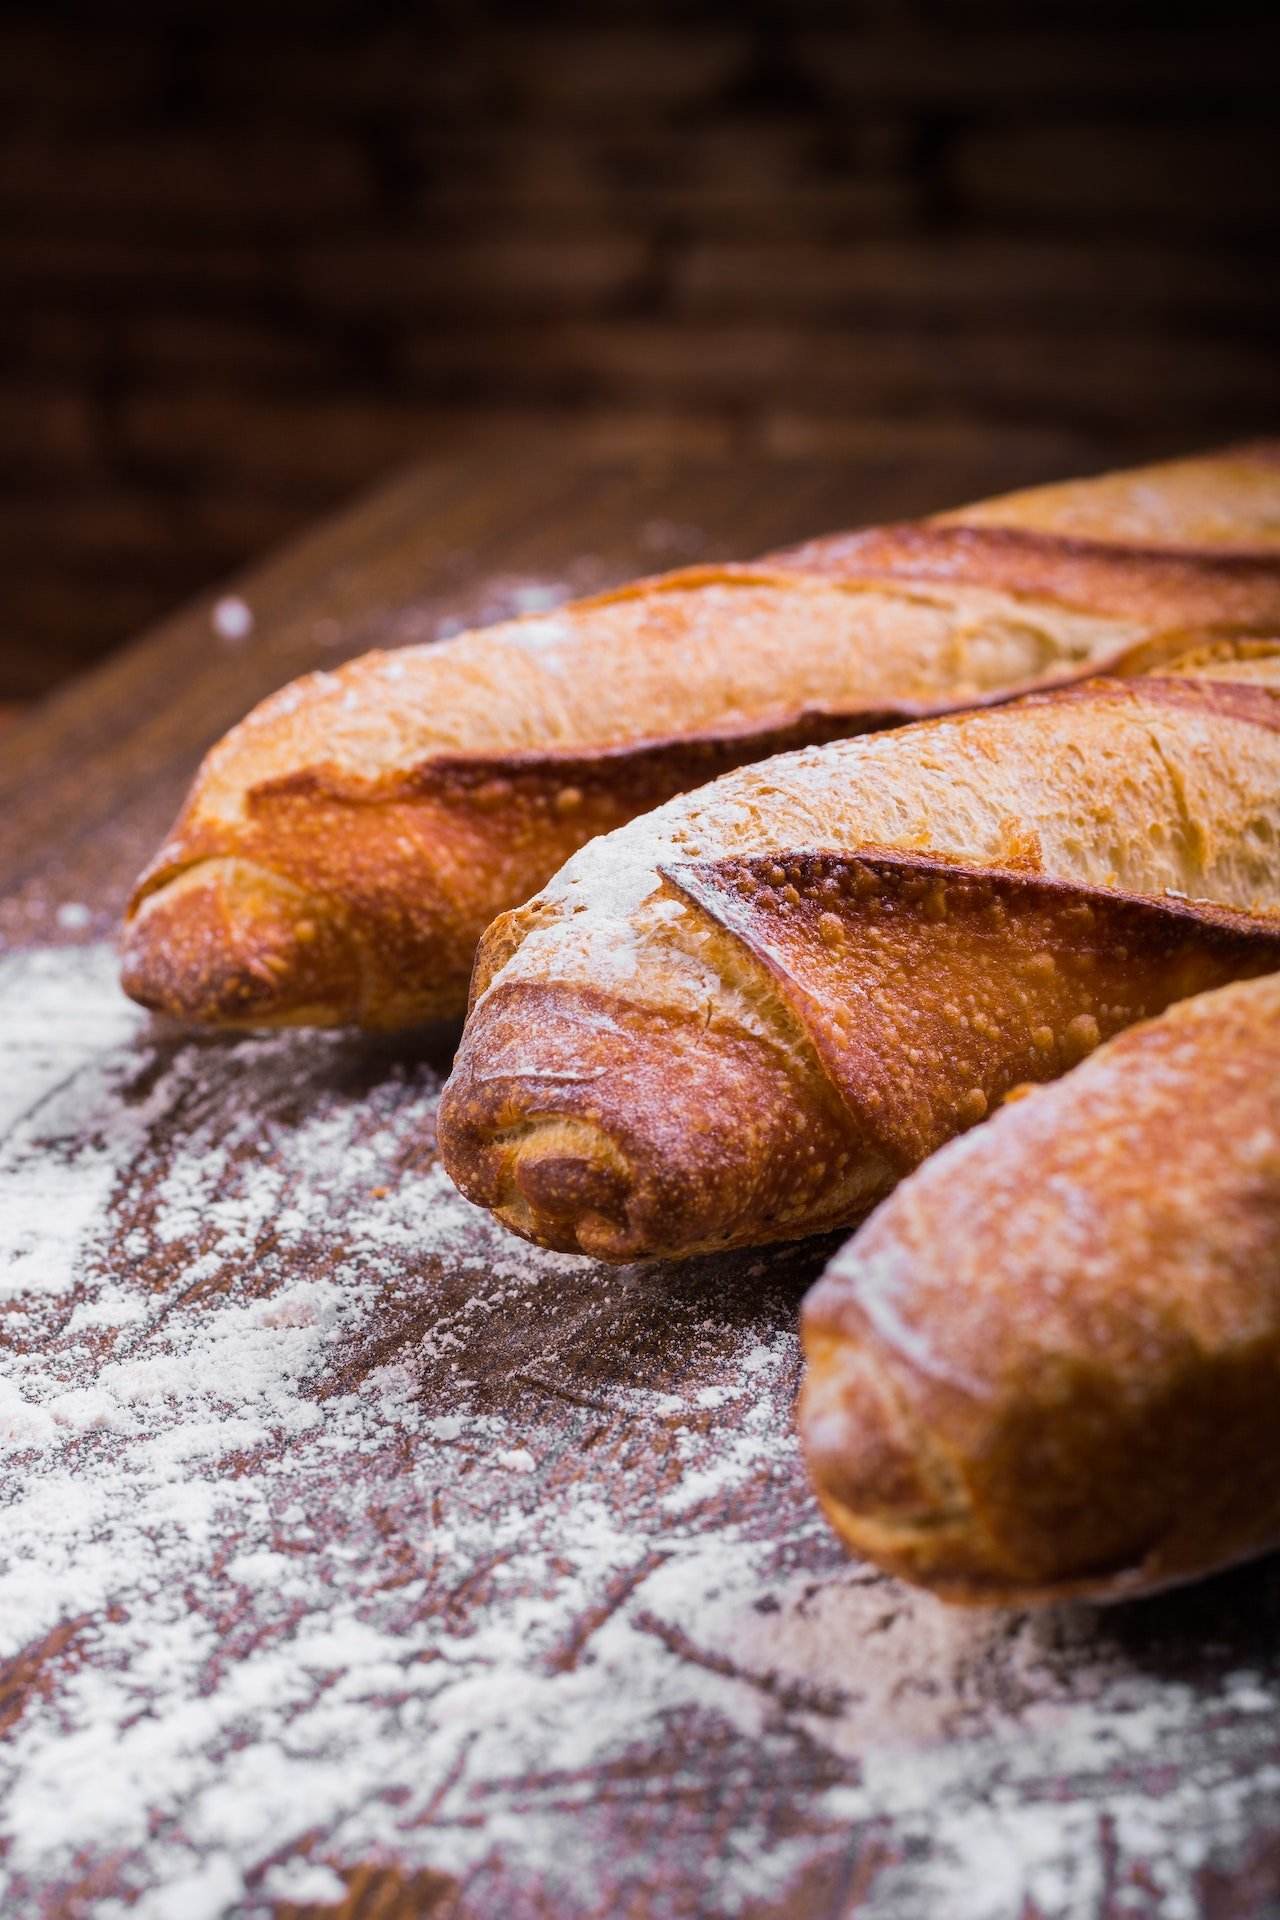 Verdades y mentiras sobre el pan integral y sus beneficios